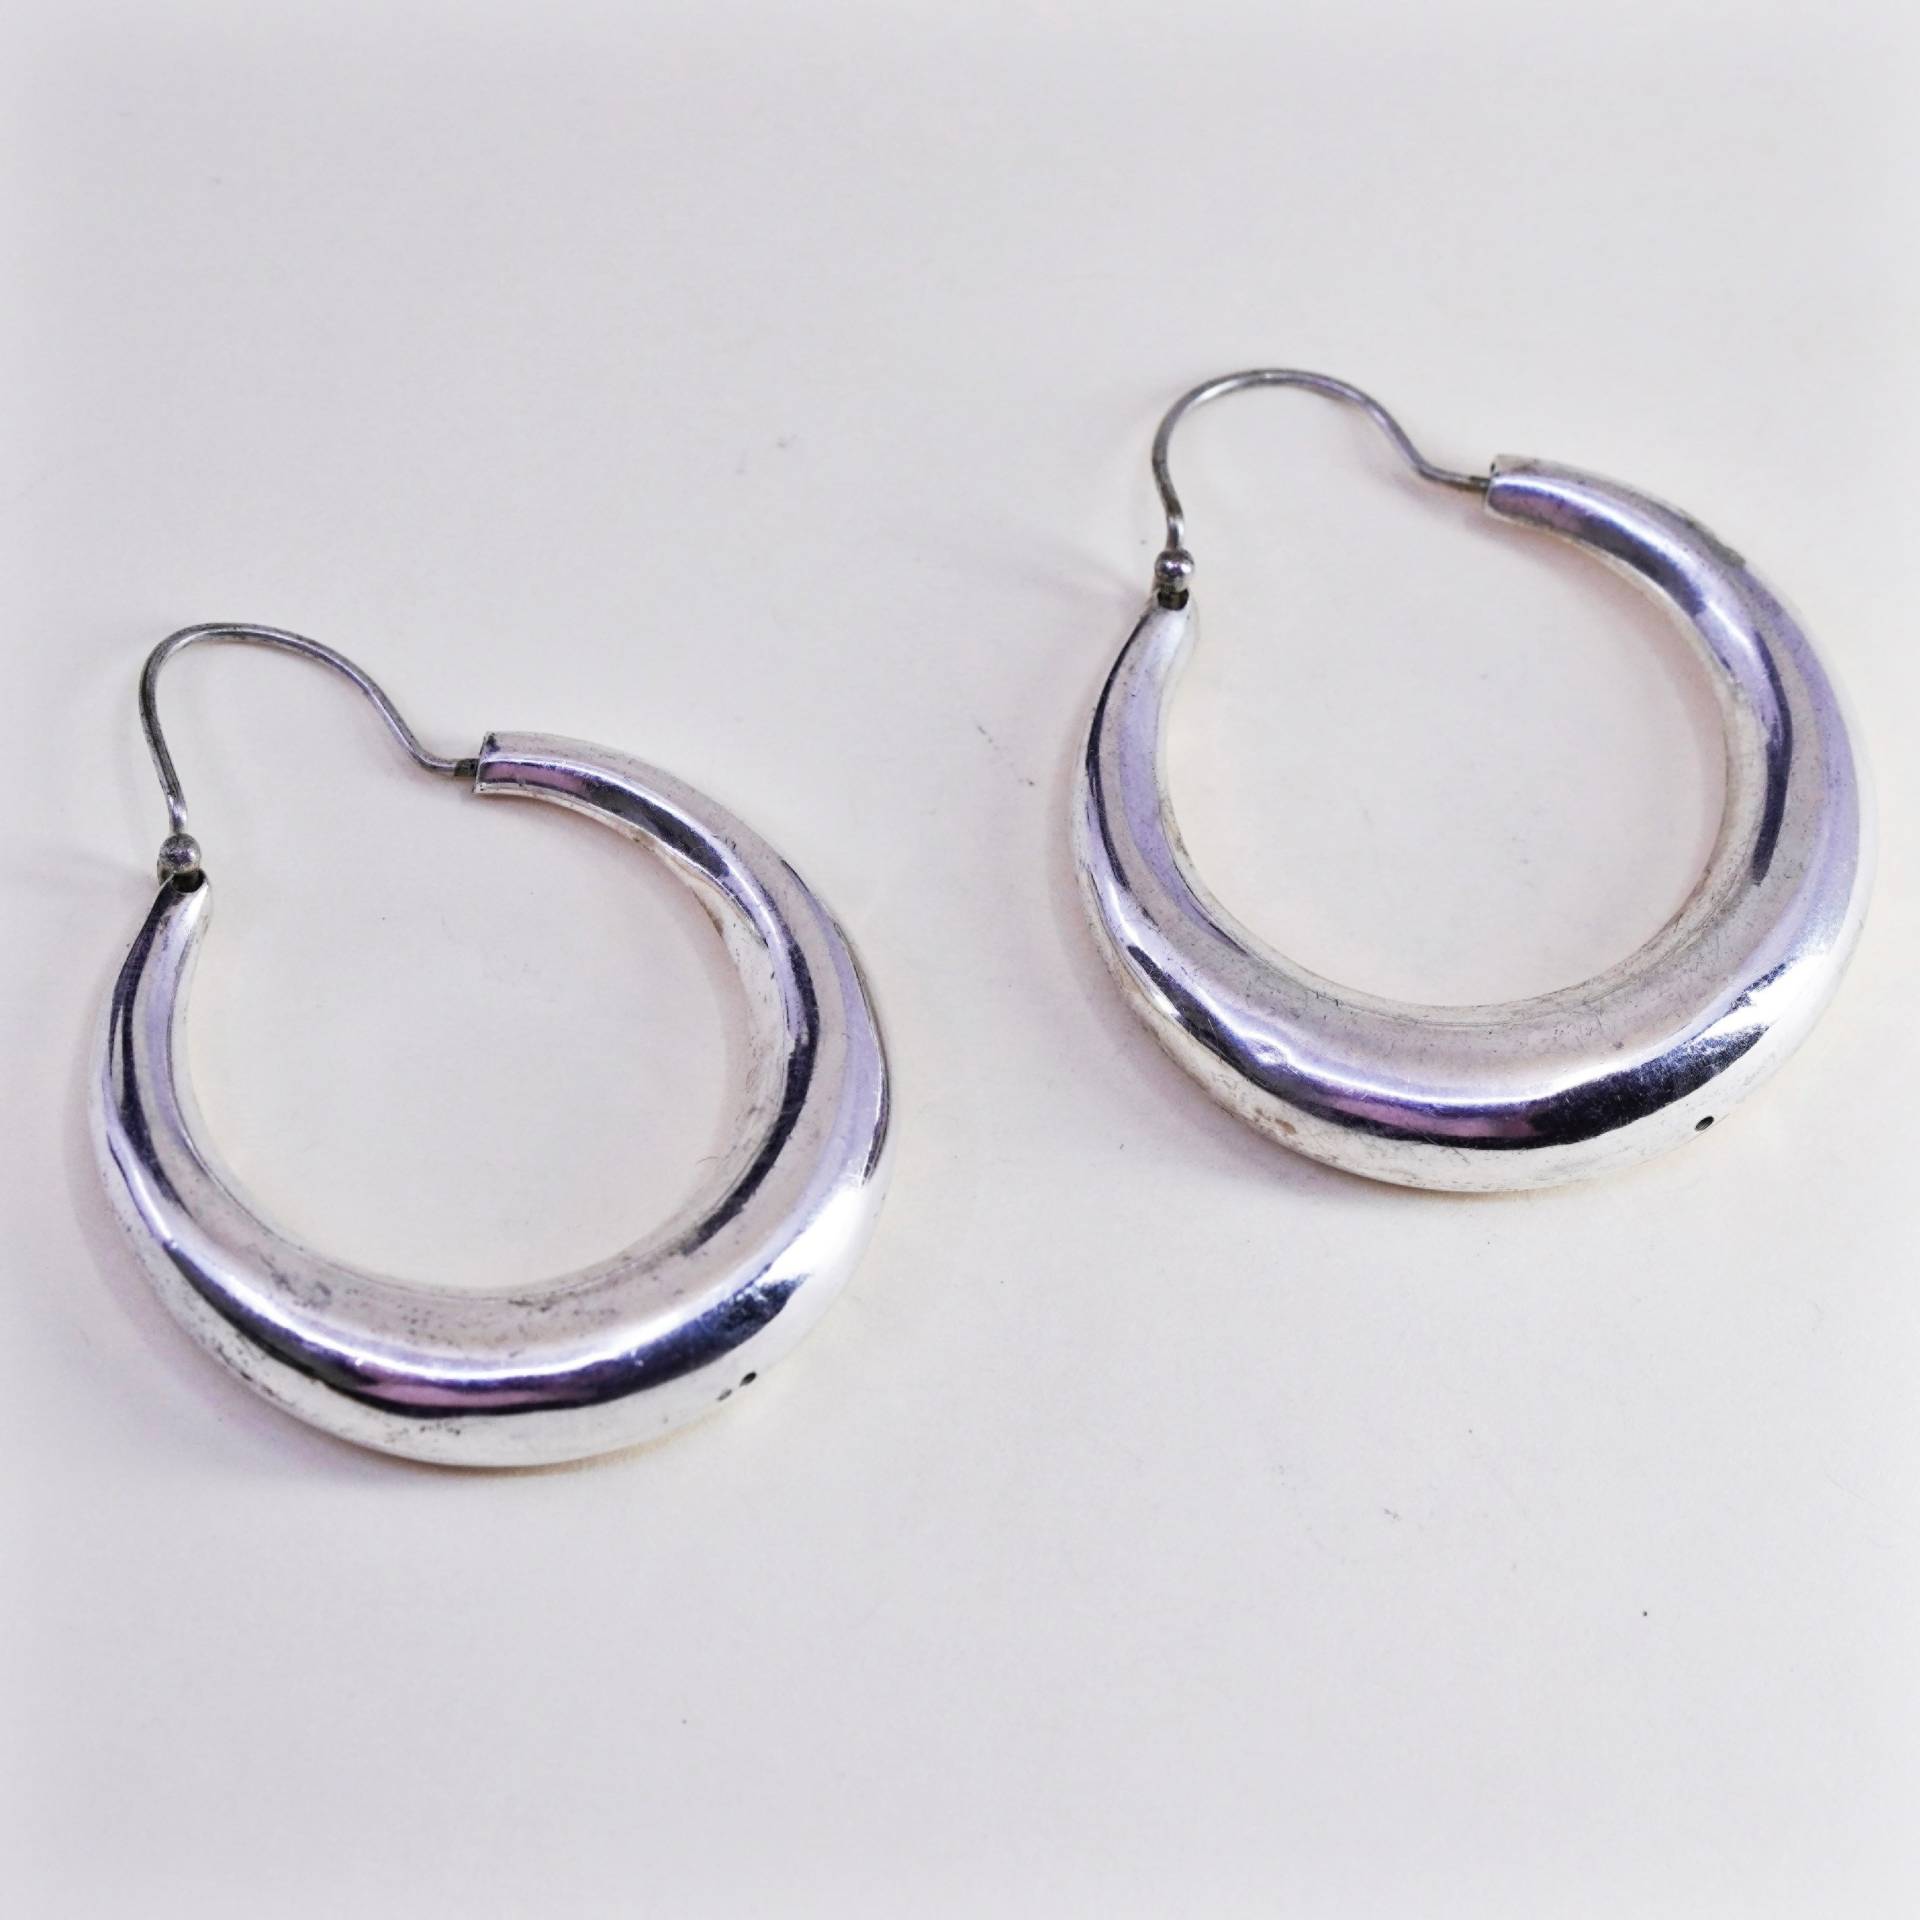 1.75" Vintage Sterling Silber Handgemachte Ohrringe, Mode Minimalistisch Primitive Runde Reifen, Gestempelt 925 von HerasJewel